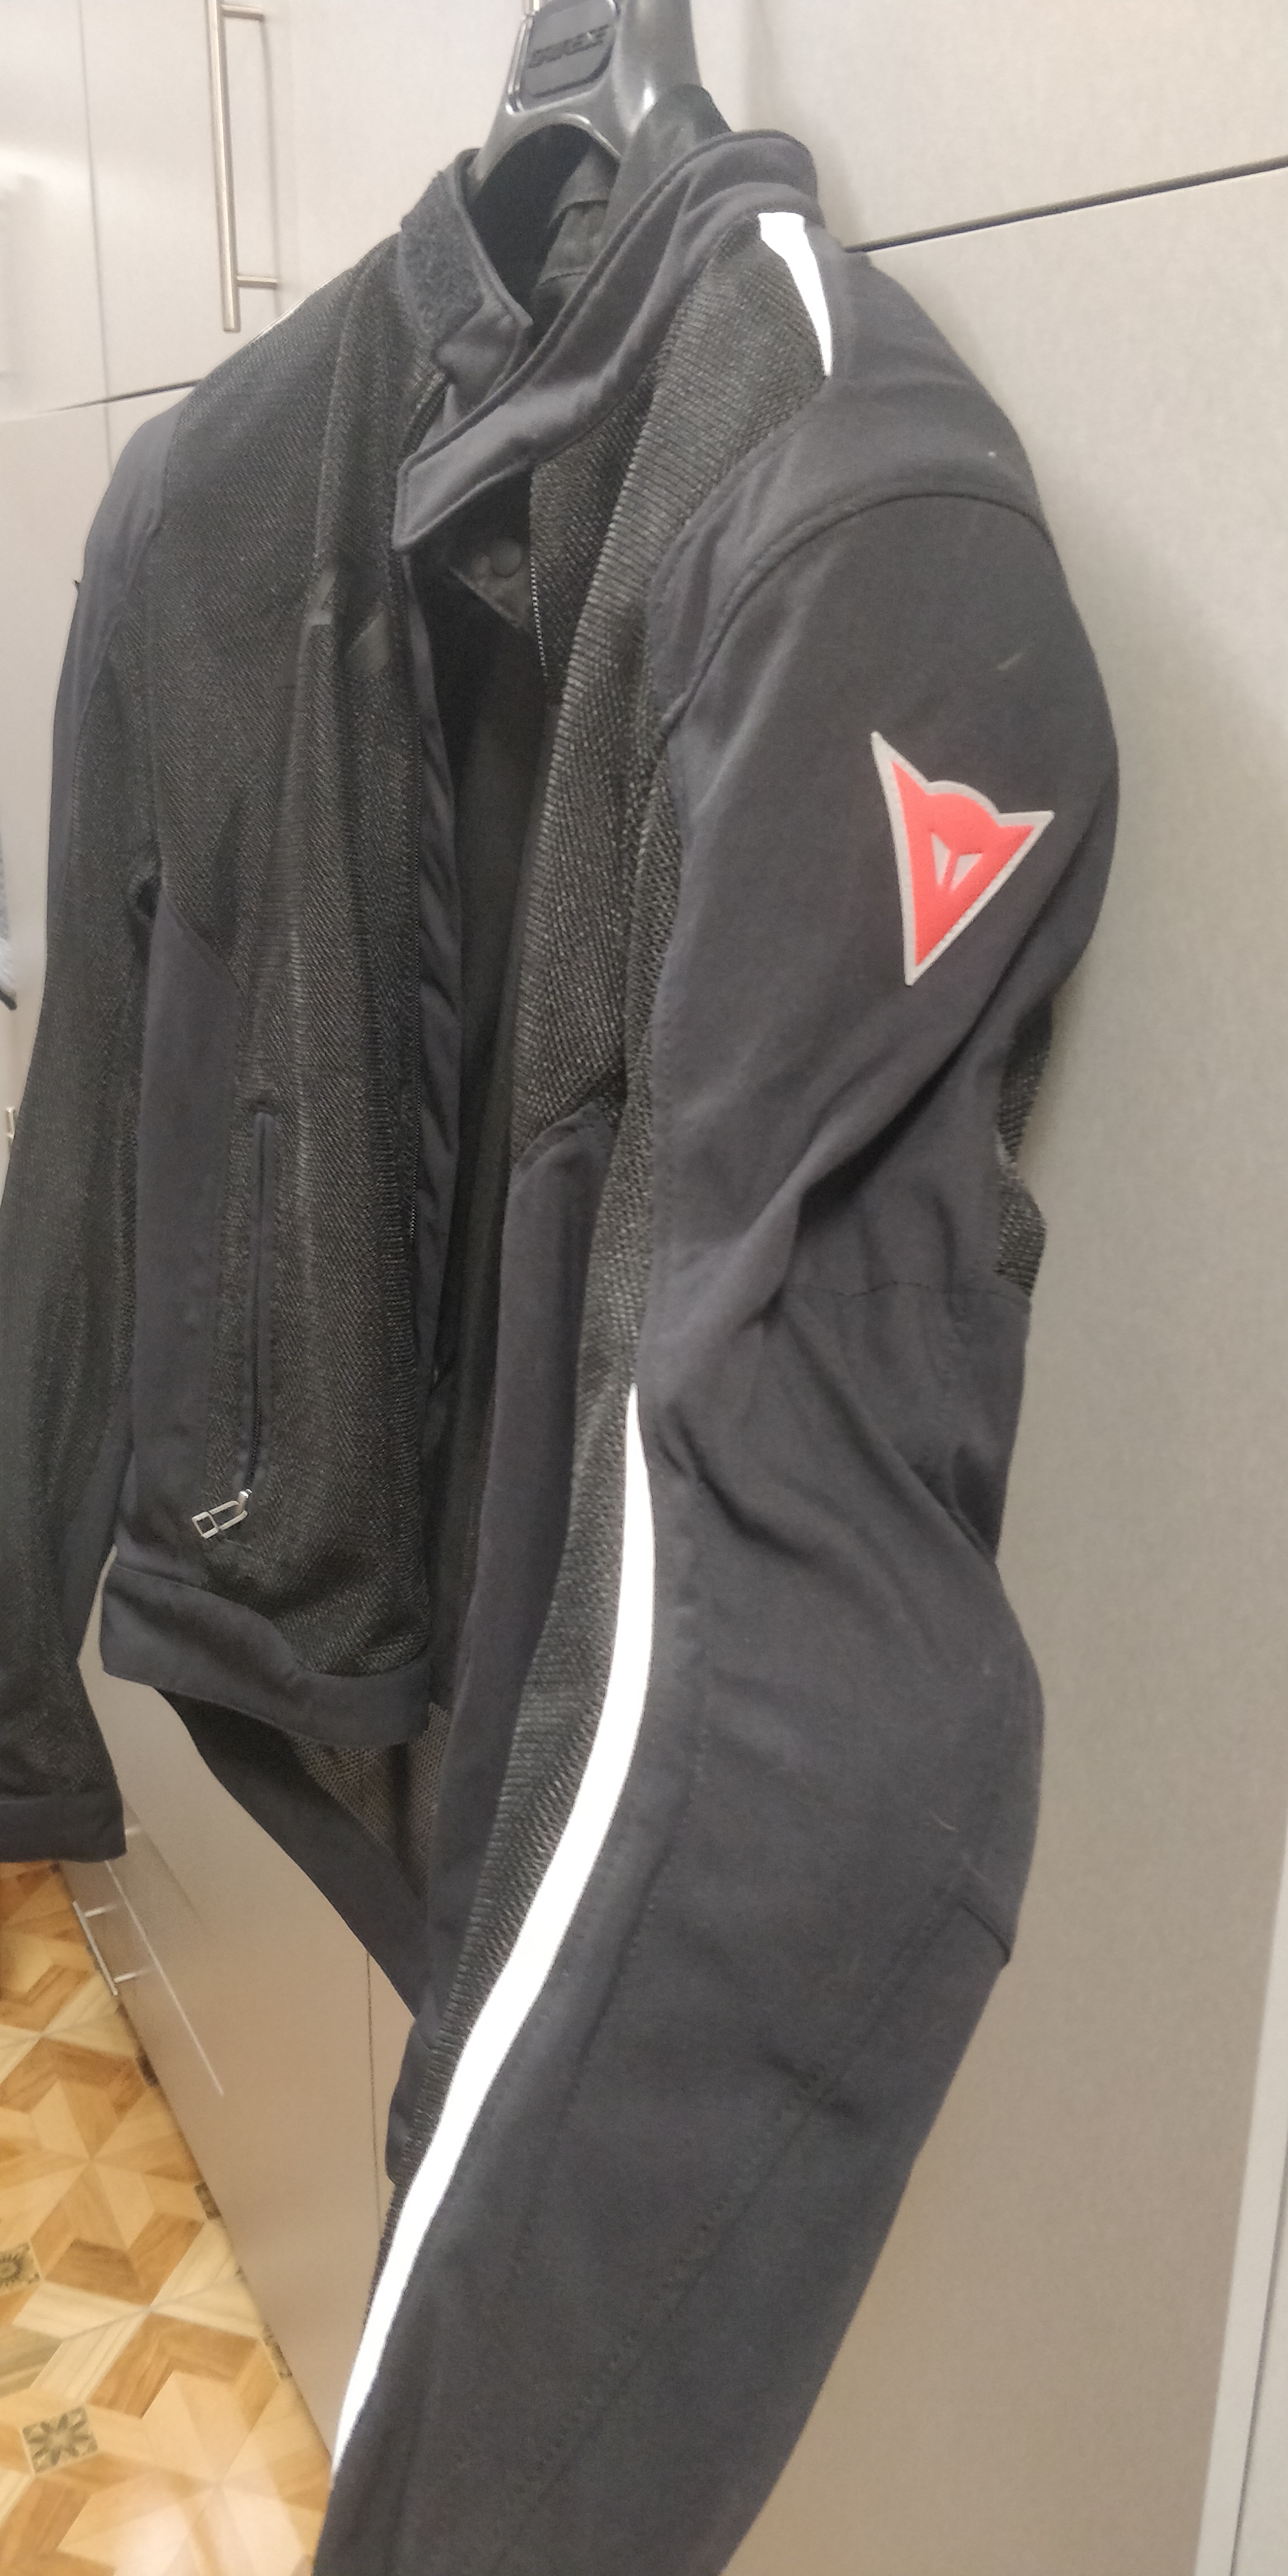 תמונה 3 ,dainese jacket אביזרים דו גלגלי אביזרי לבוש ומיגון